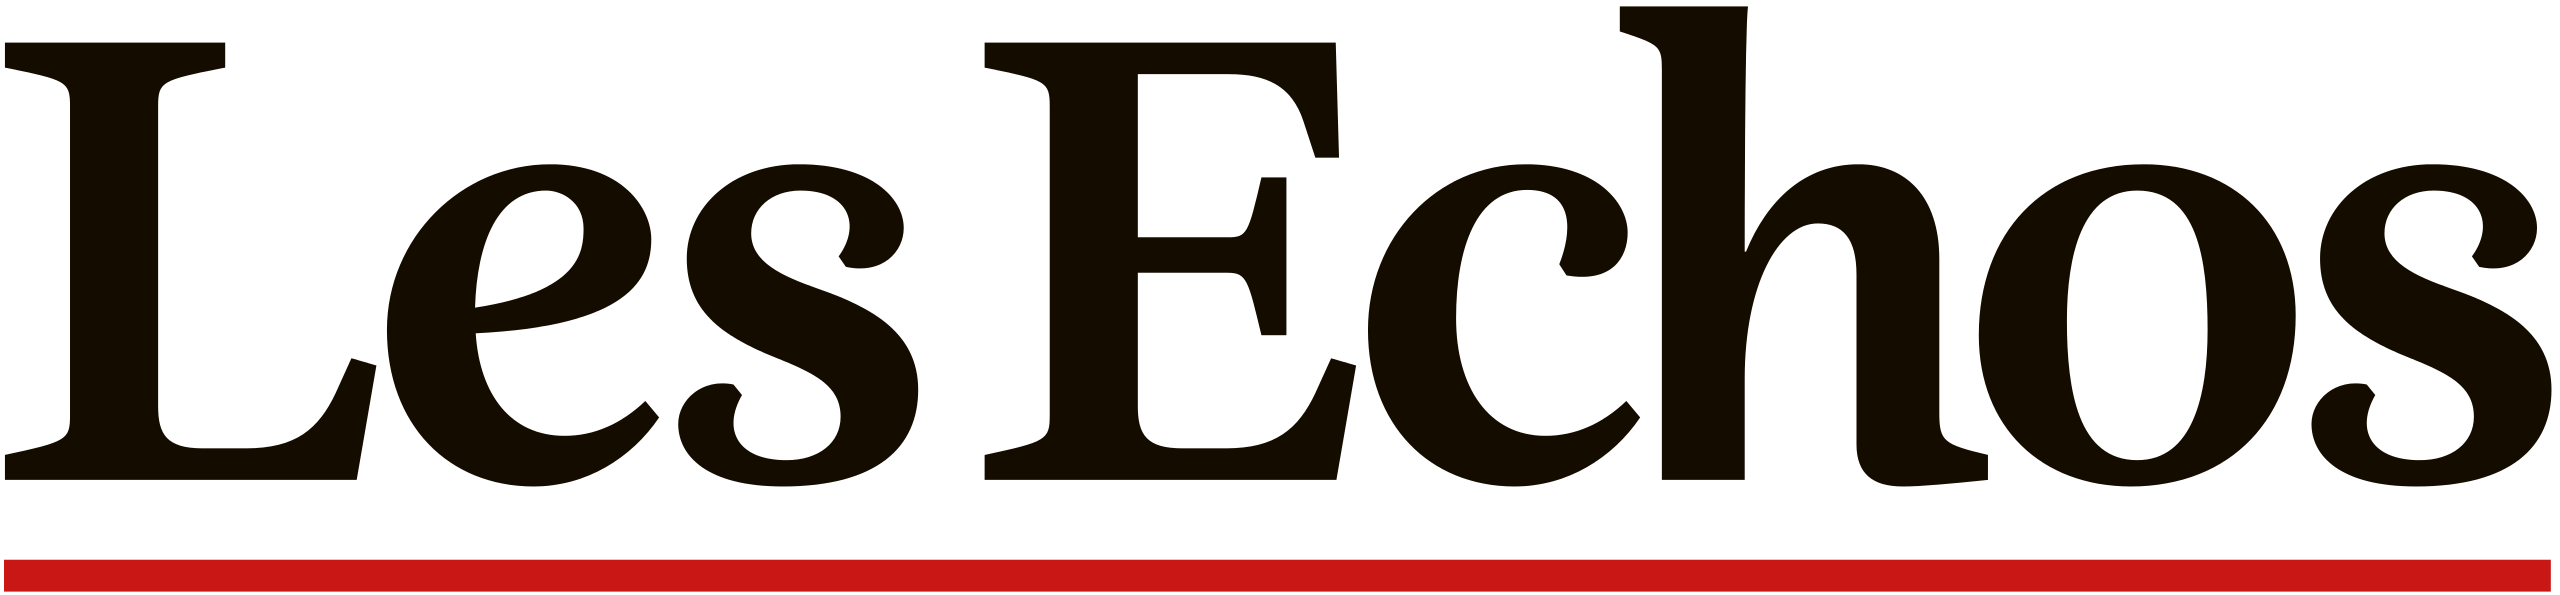 Les_echos_(logo).svg